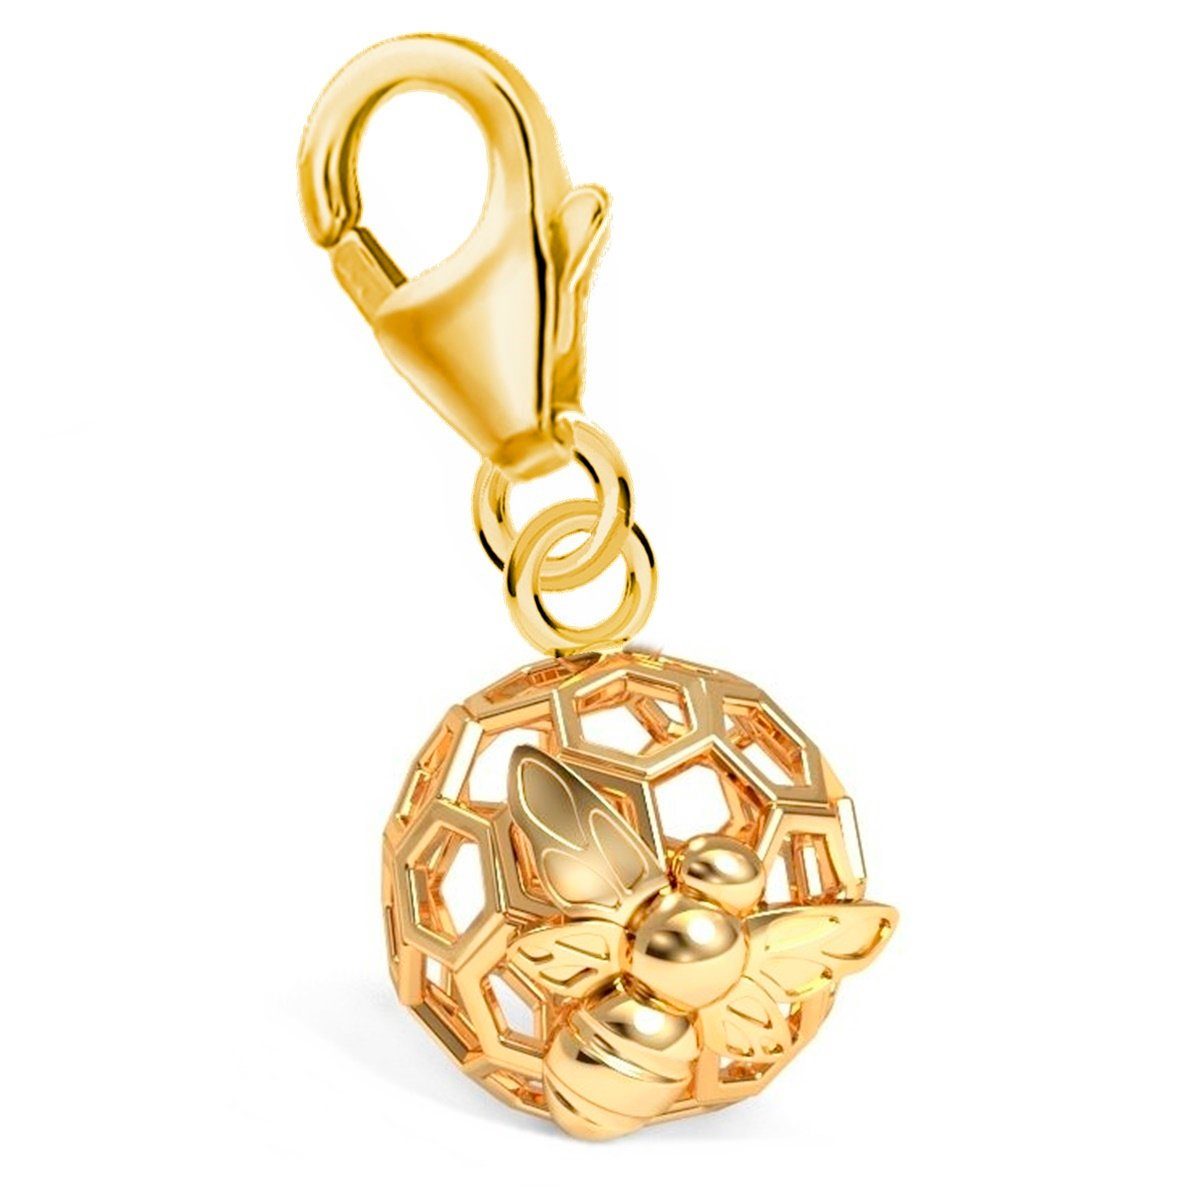 Goldene Hufeisen Charm-Einhänger Honigwabe mit Biene Karabiner Charm Anhänger 925 Silber Vergoldet (inkl. Etui), für Gliederarmband oder Halskette